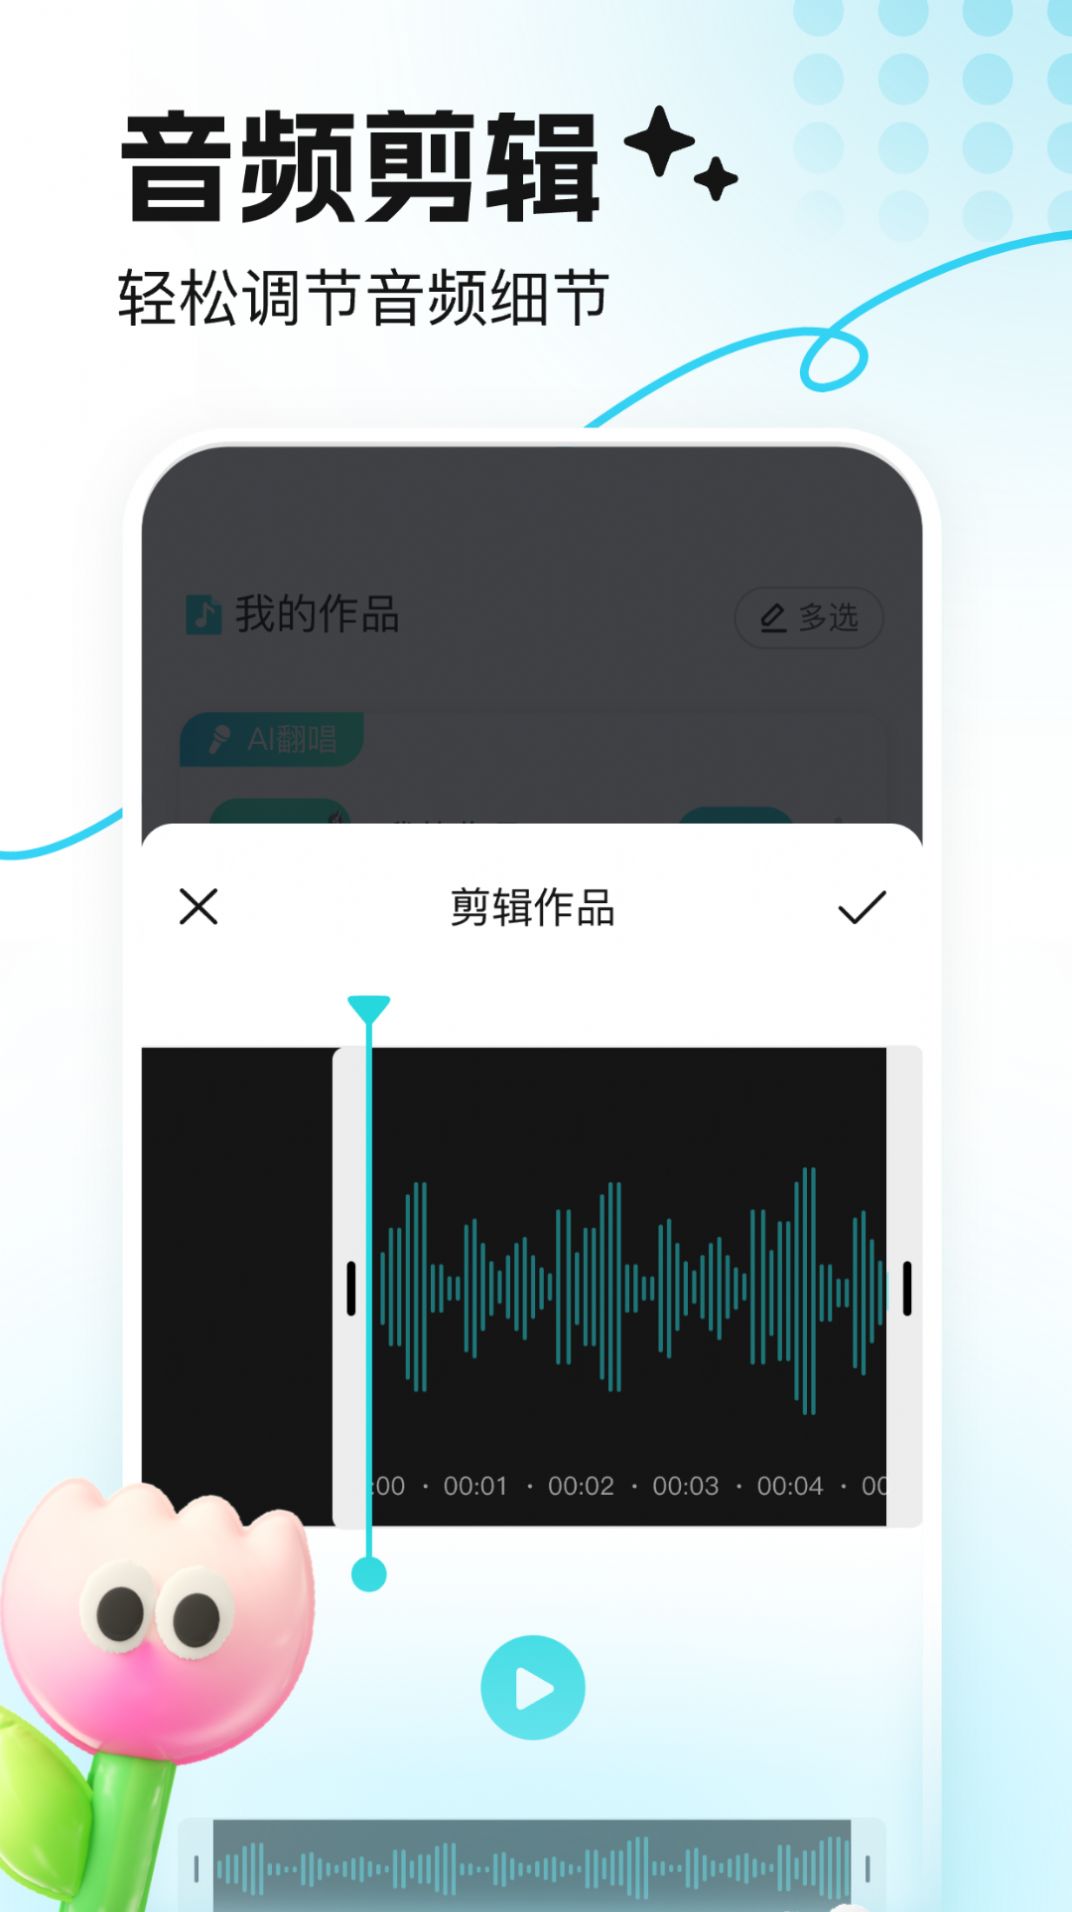 音鹿语音变声器app下载官方版[图2]